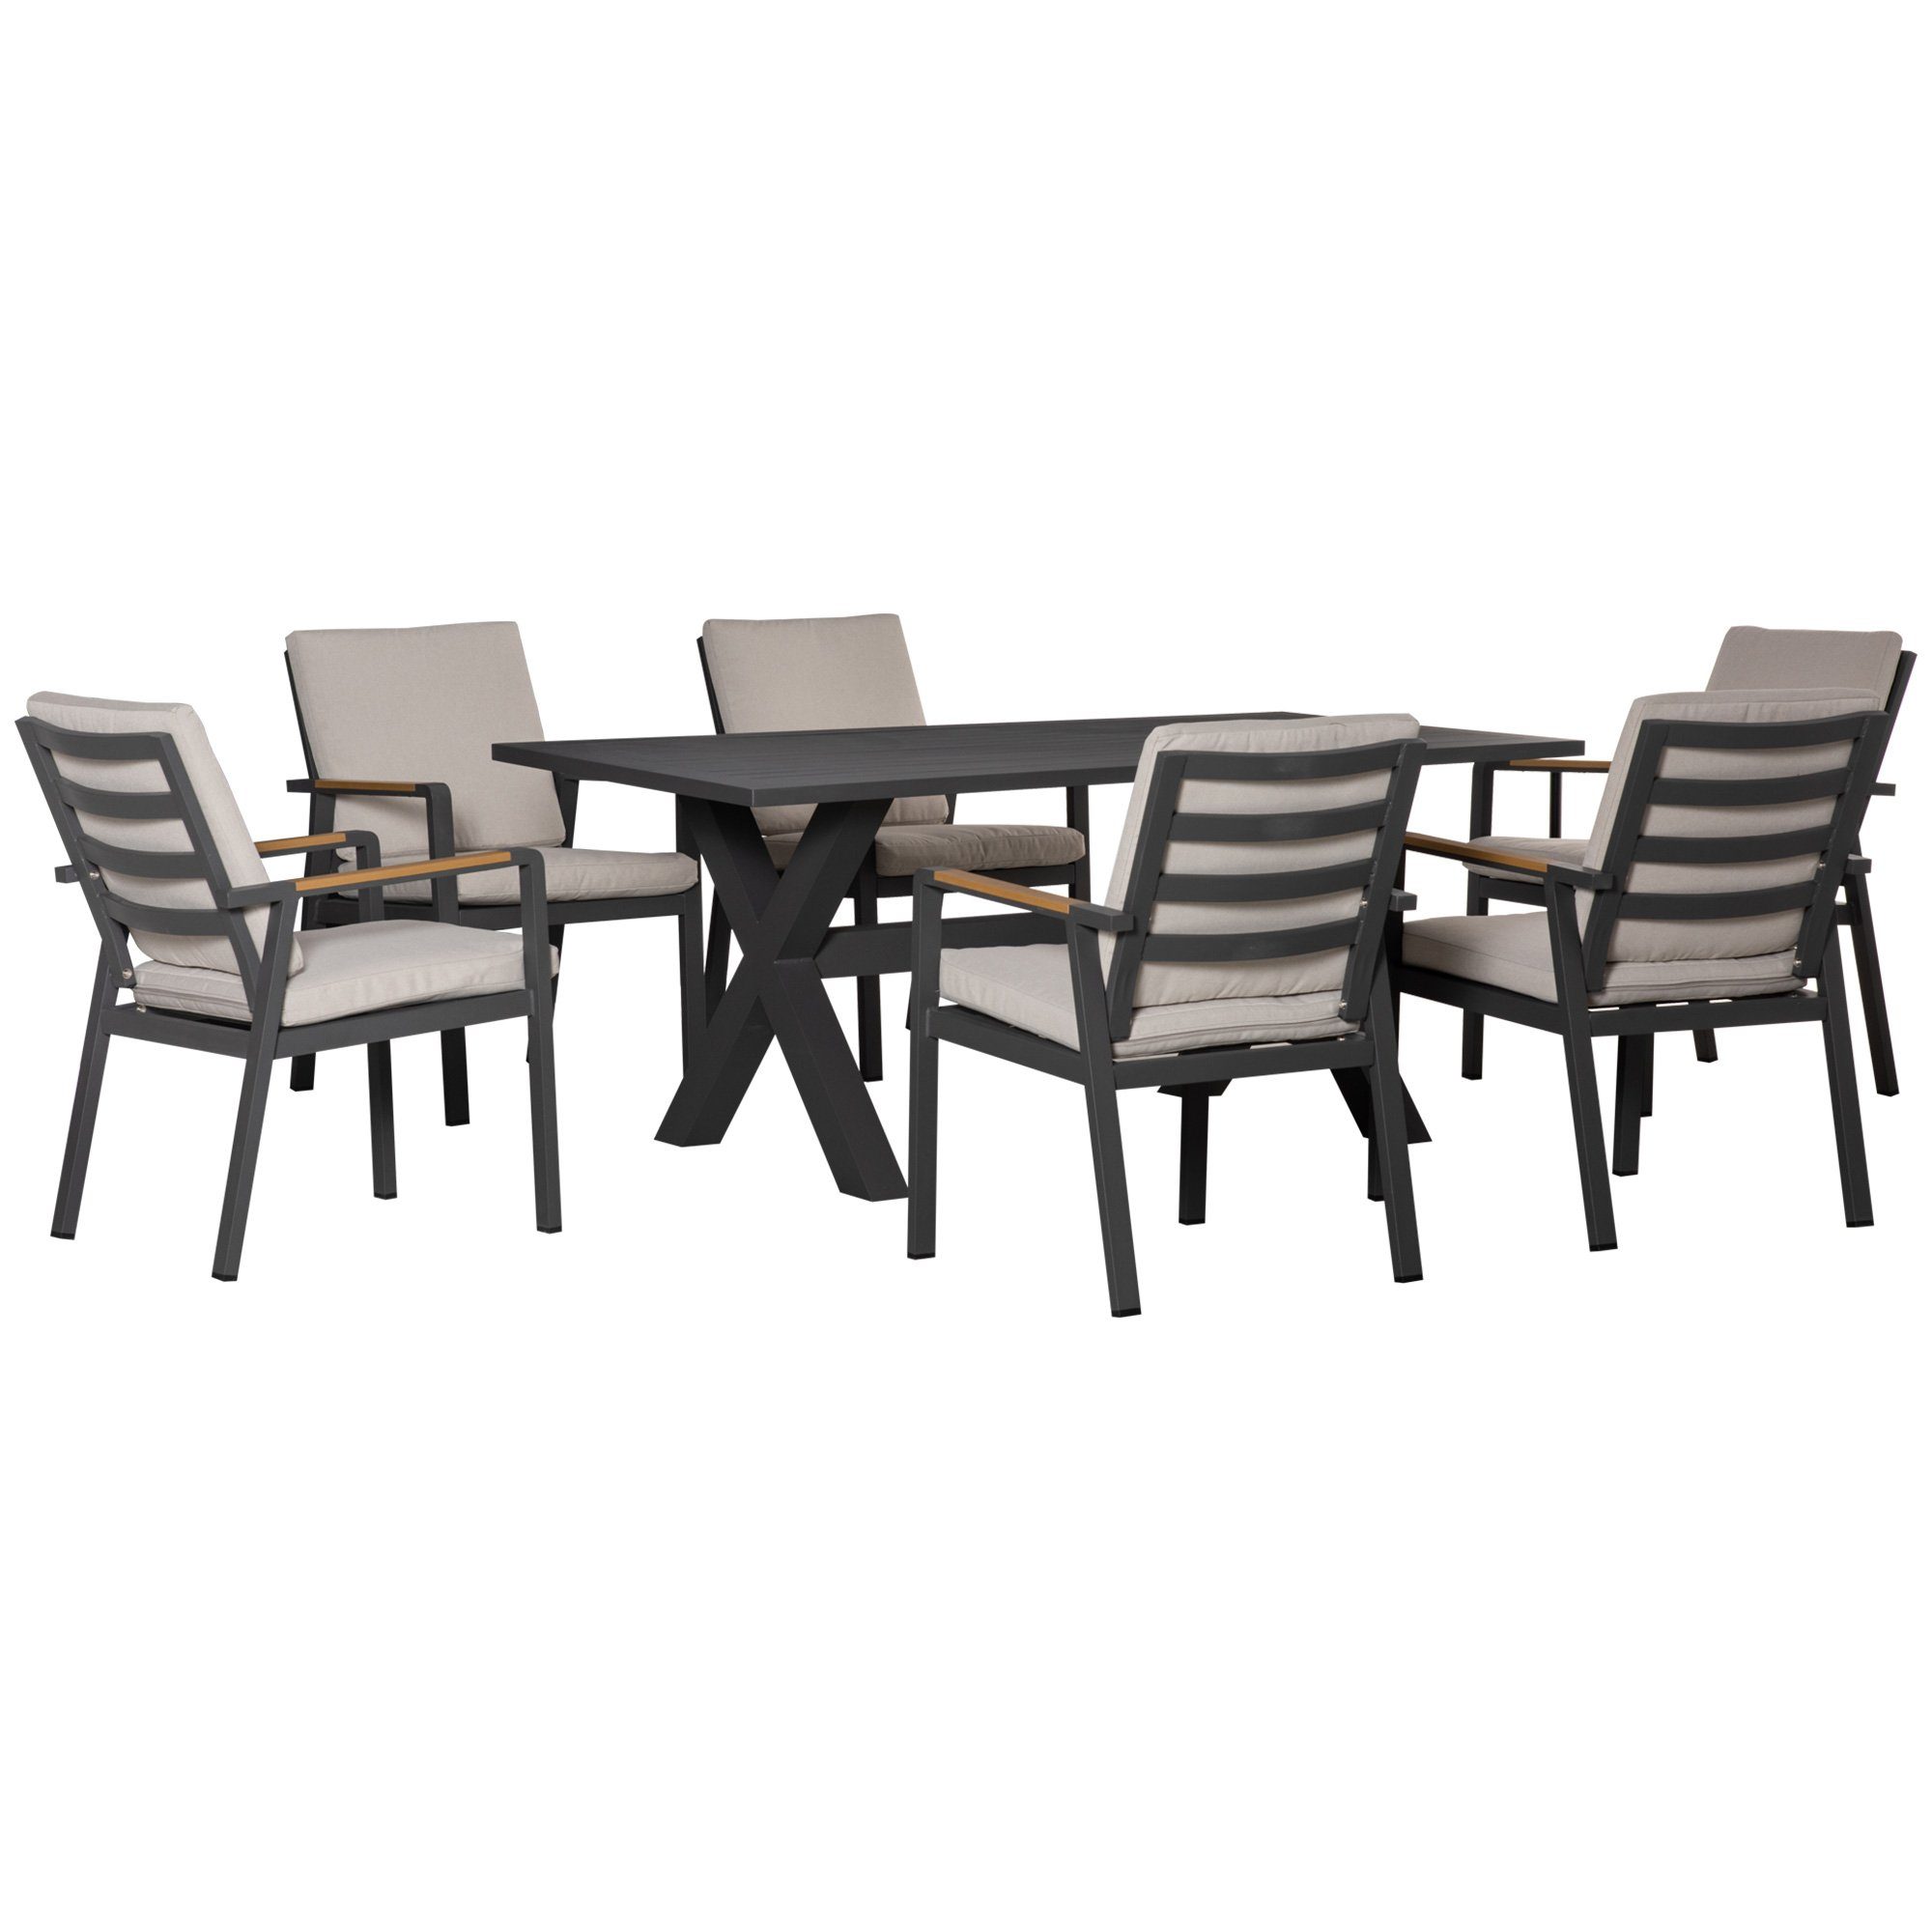 Outsunny Sitzgruppe 7-teilig, 6 Stühle, 1 Tisch, wasserabweisende Polster, 175x92,5x73cm